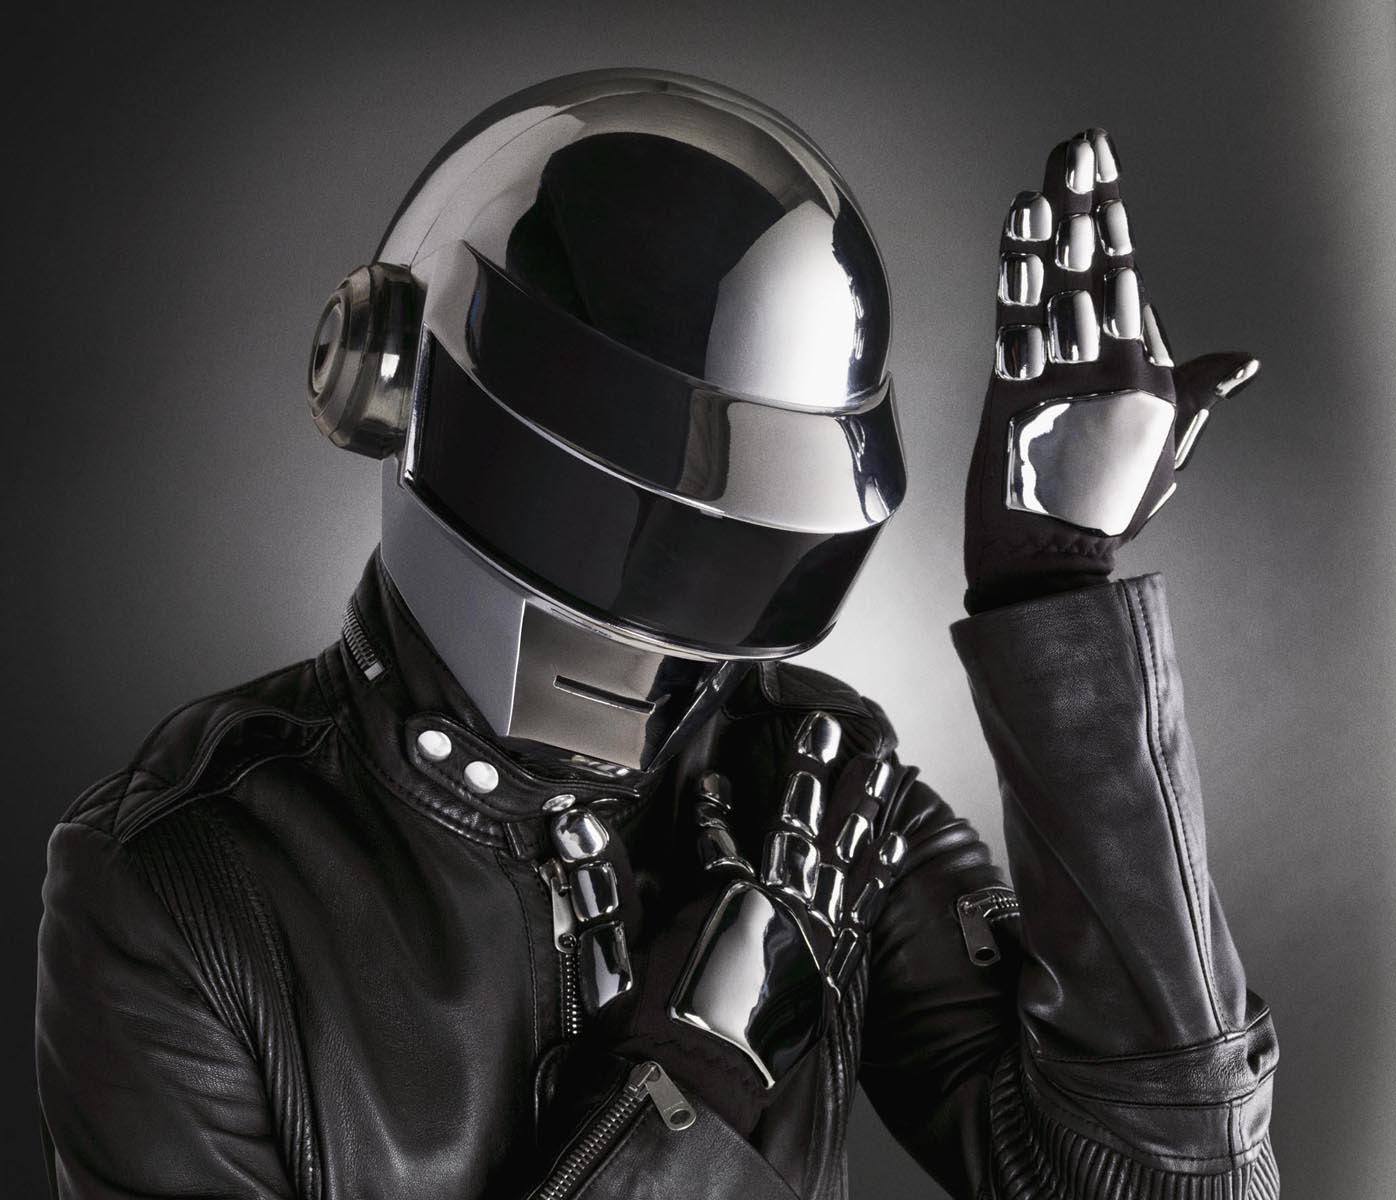 Thomas Bangalter de Daft Punk sumará un tema nuevo para la banda sonora del film 'Climax' de Gaspar Noé. Cusica Plus.